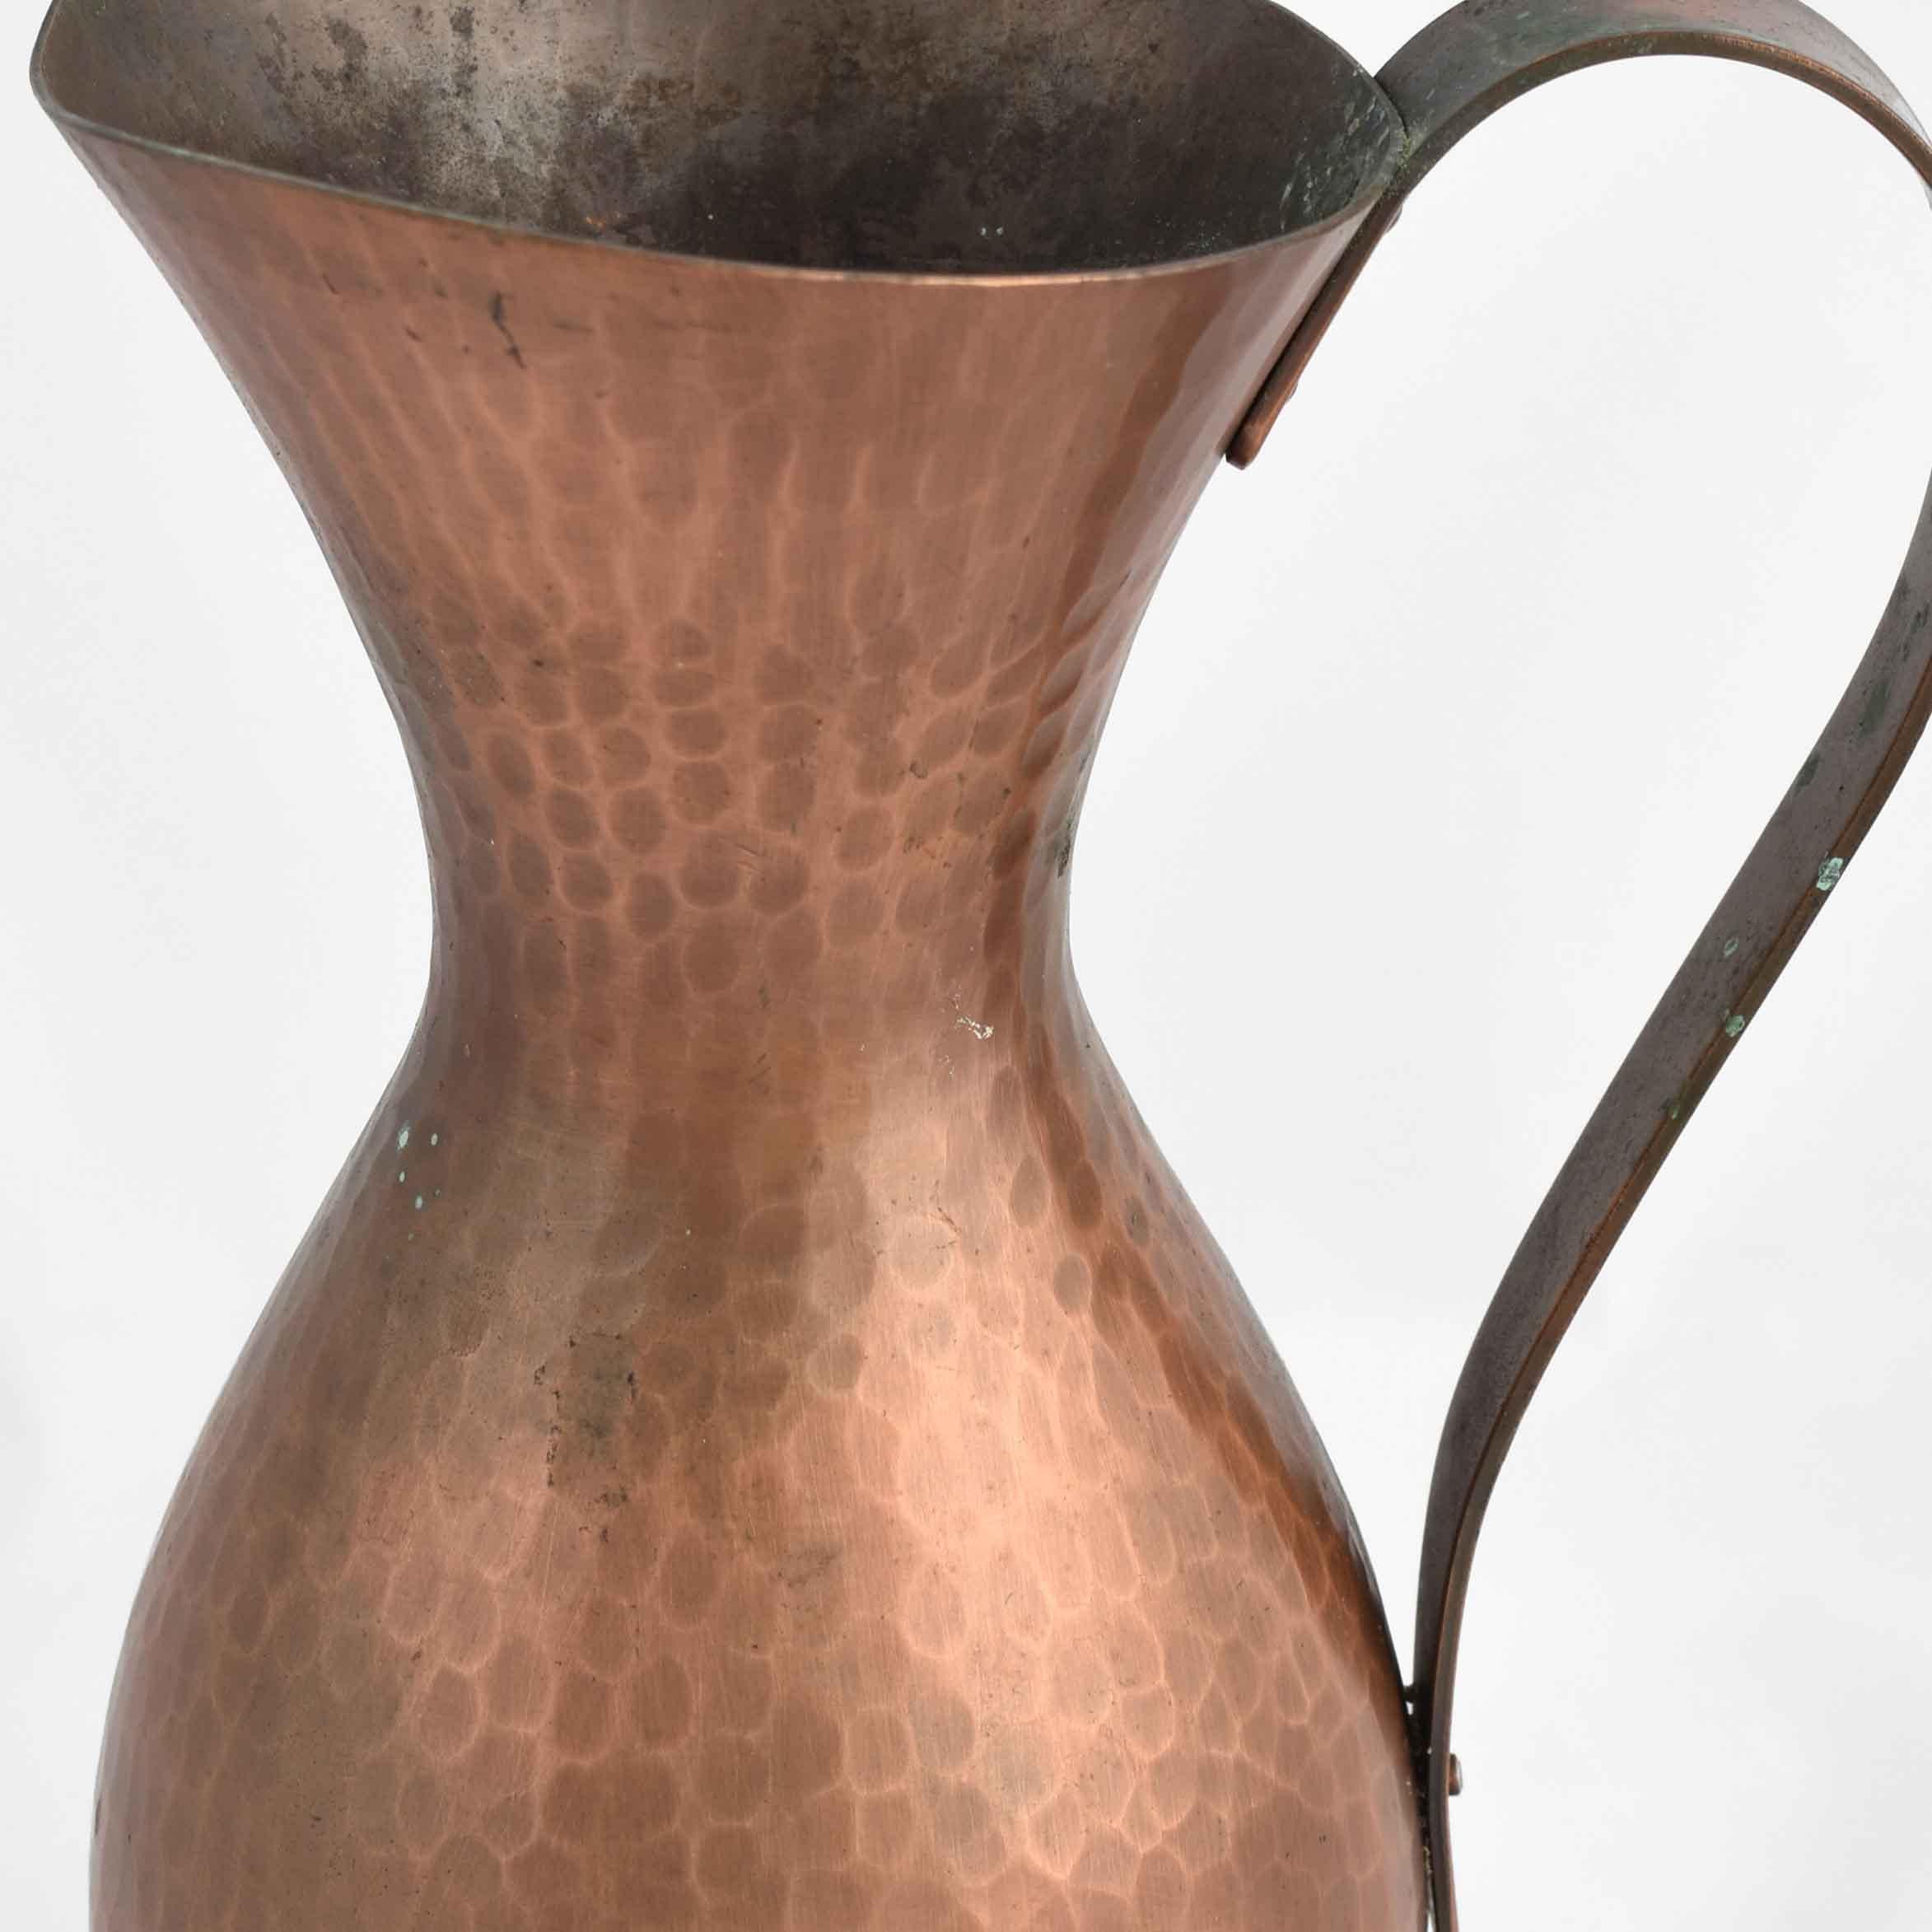 Vintage Copper Pitcher est un ensemble métallique original réalisé dans les années 1950.

Le cuivre original.

Fabriqué en Allemagne, créé par Eugen Zint.

Bon état : chacun avec de légers signes de vieillissement.

Belle pièce de design